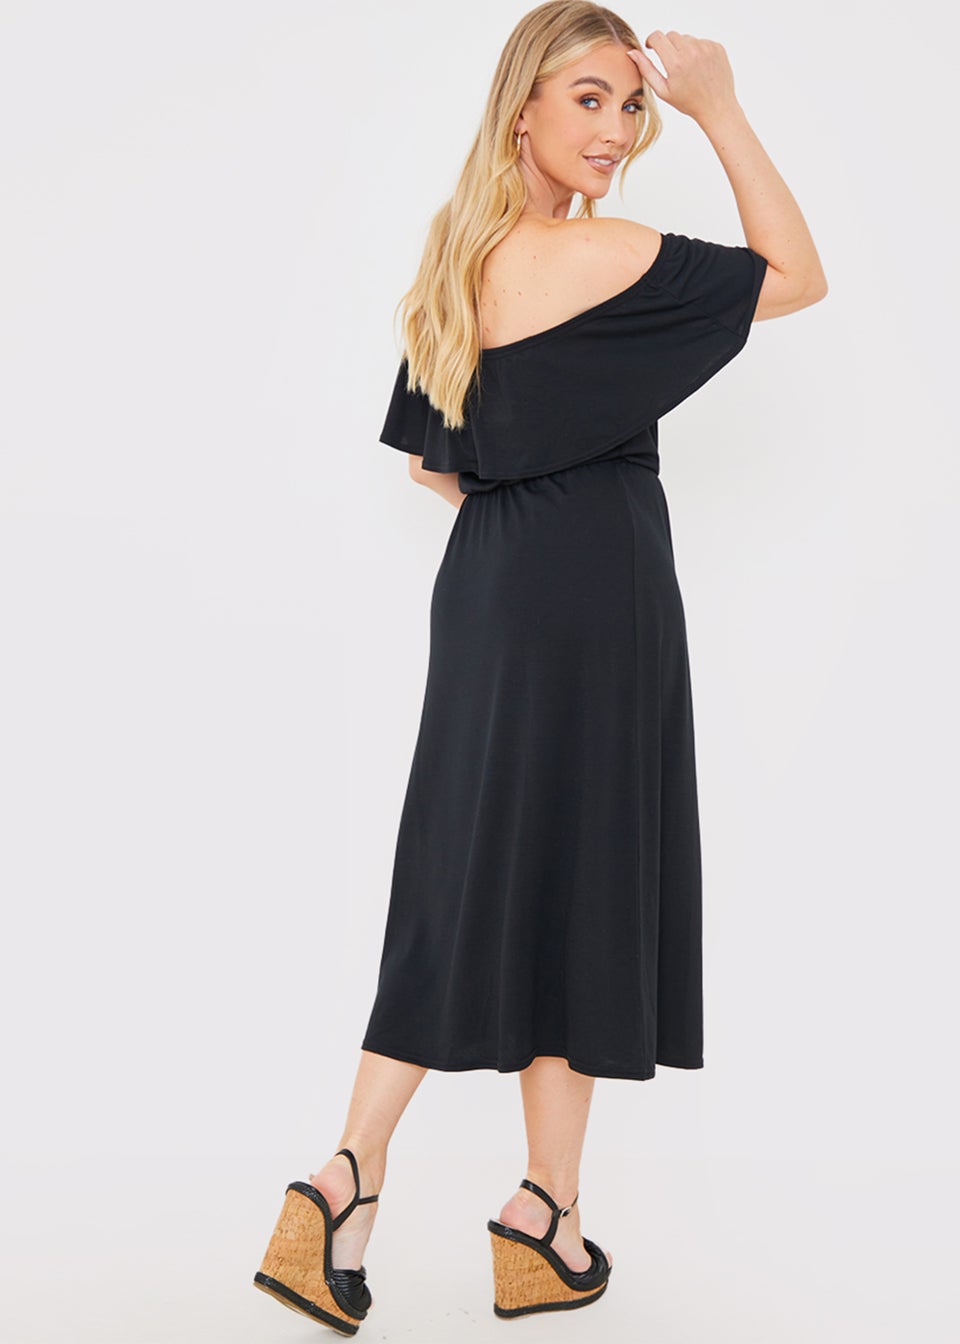 In the Style Jac Jossa Black Bardot Midi Dress - Matalan